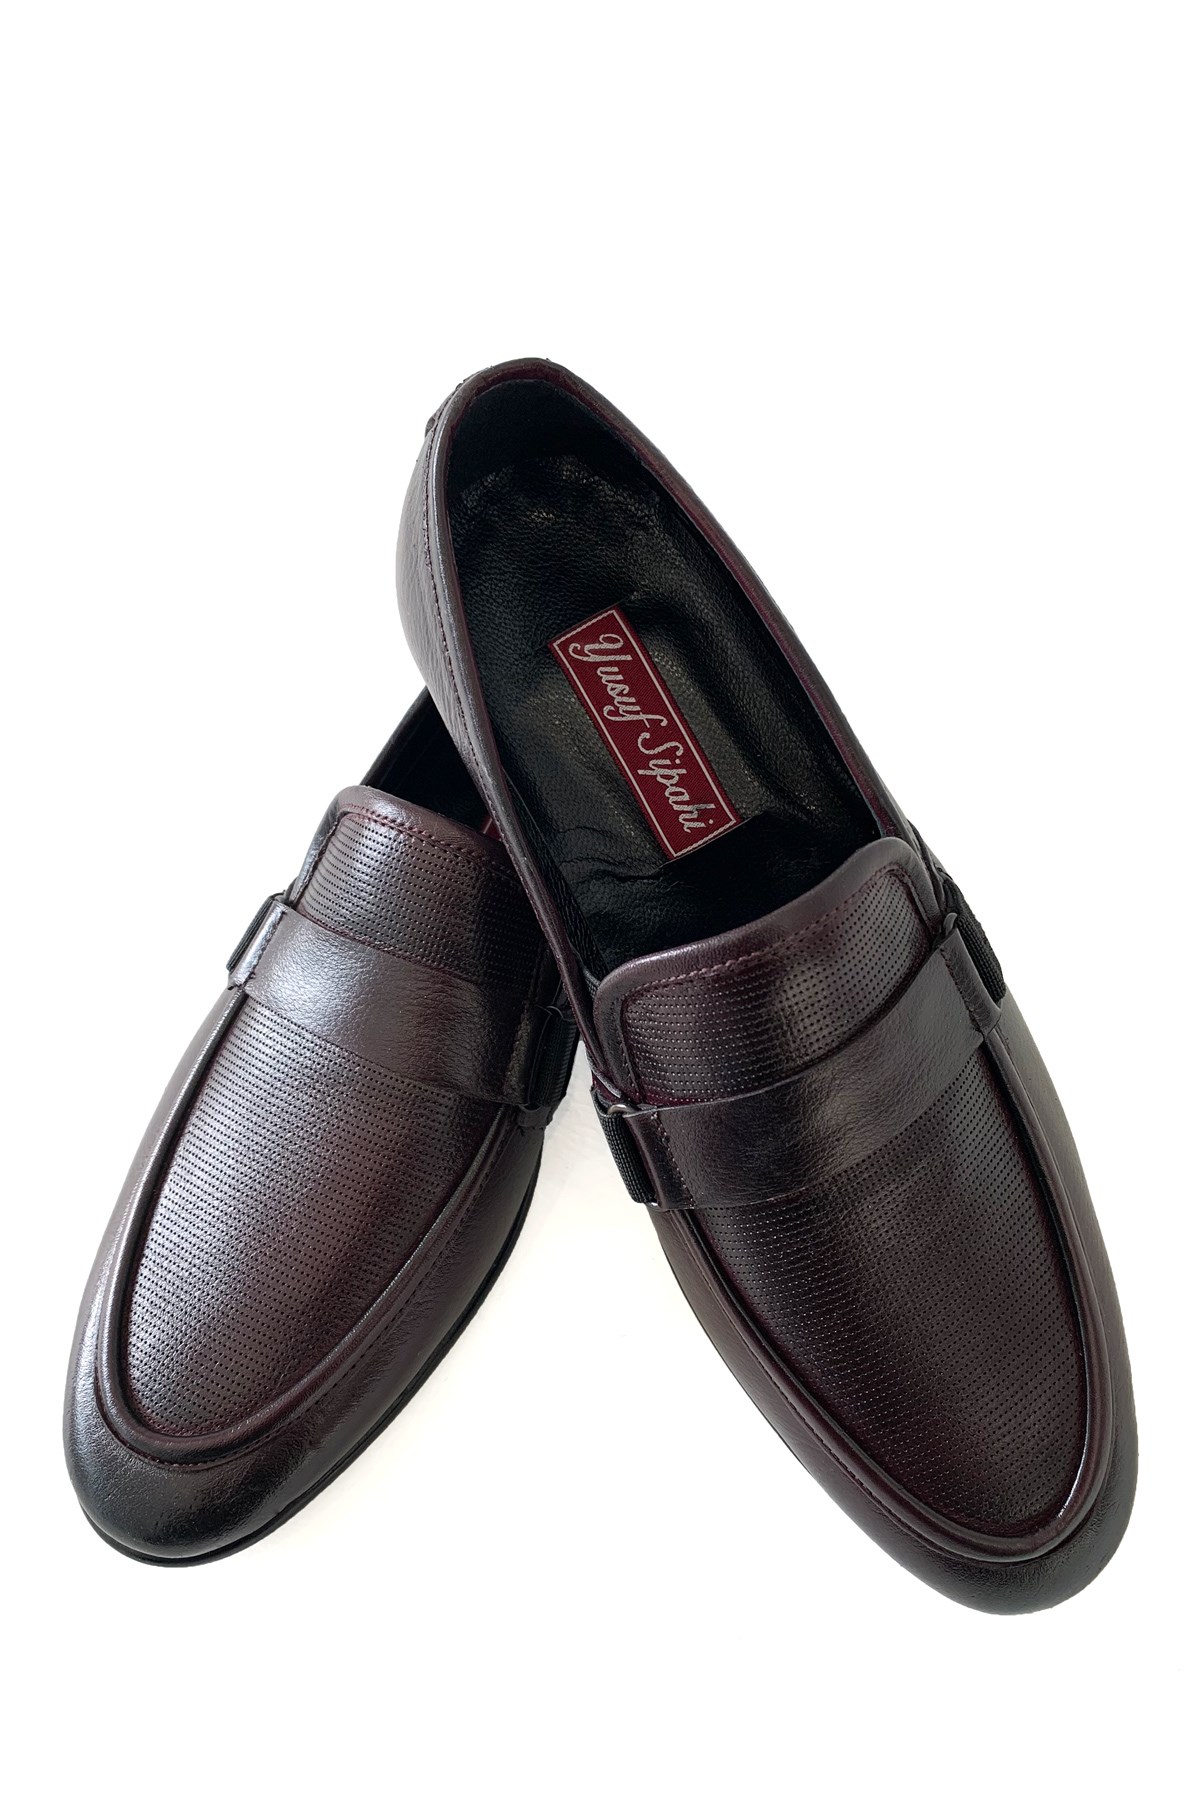 Bordo Hakiki Deri Bağcıksız Orta Topuk Klasik Erkek Ayakkabı | Erkek  Ayakkabı | modaferraro.com.tr